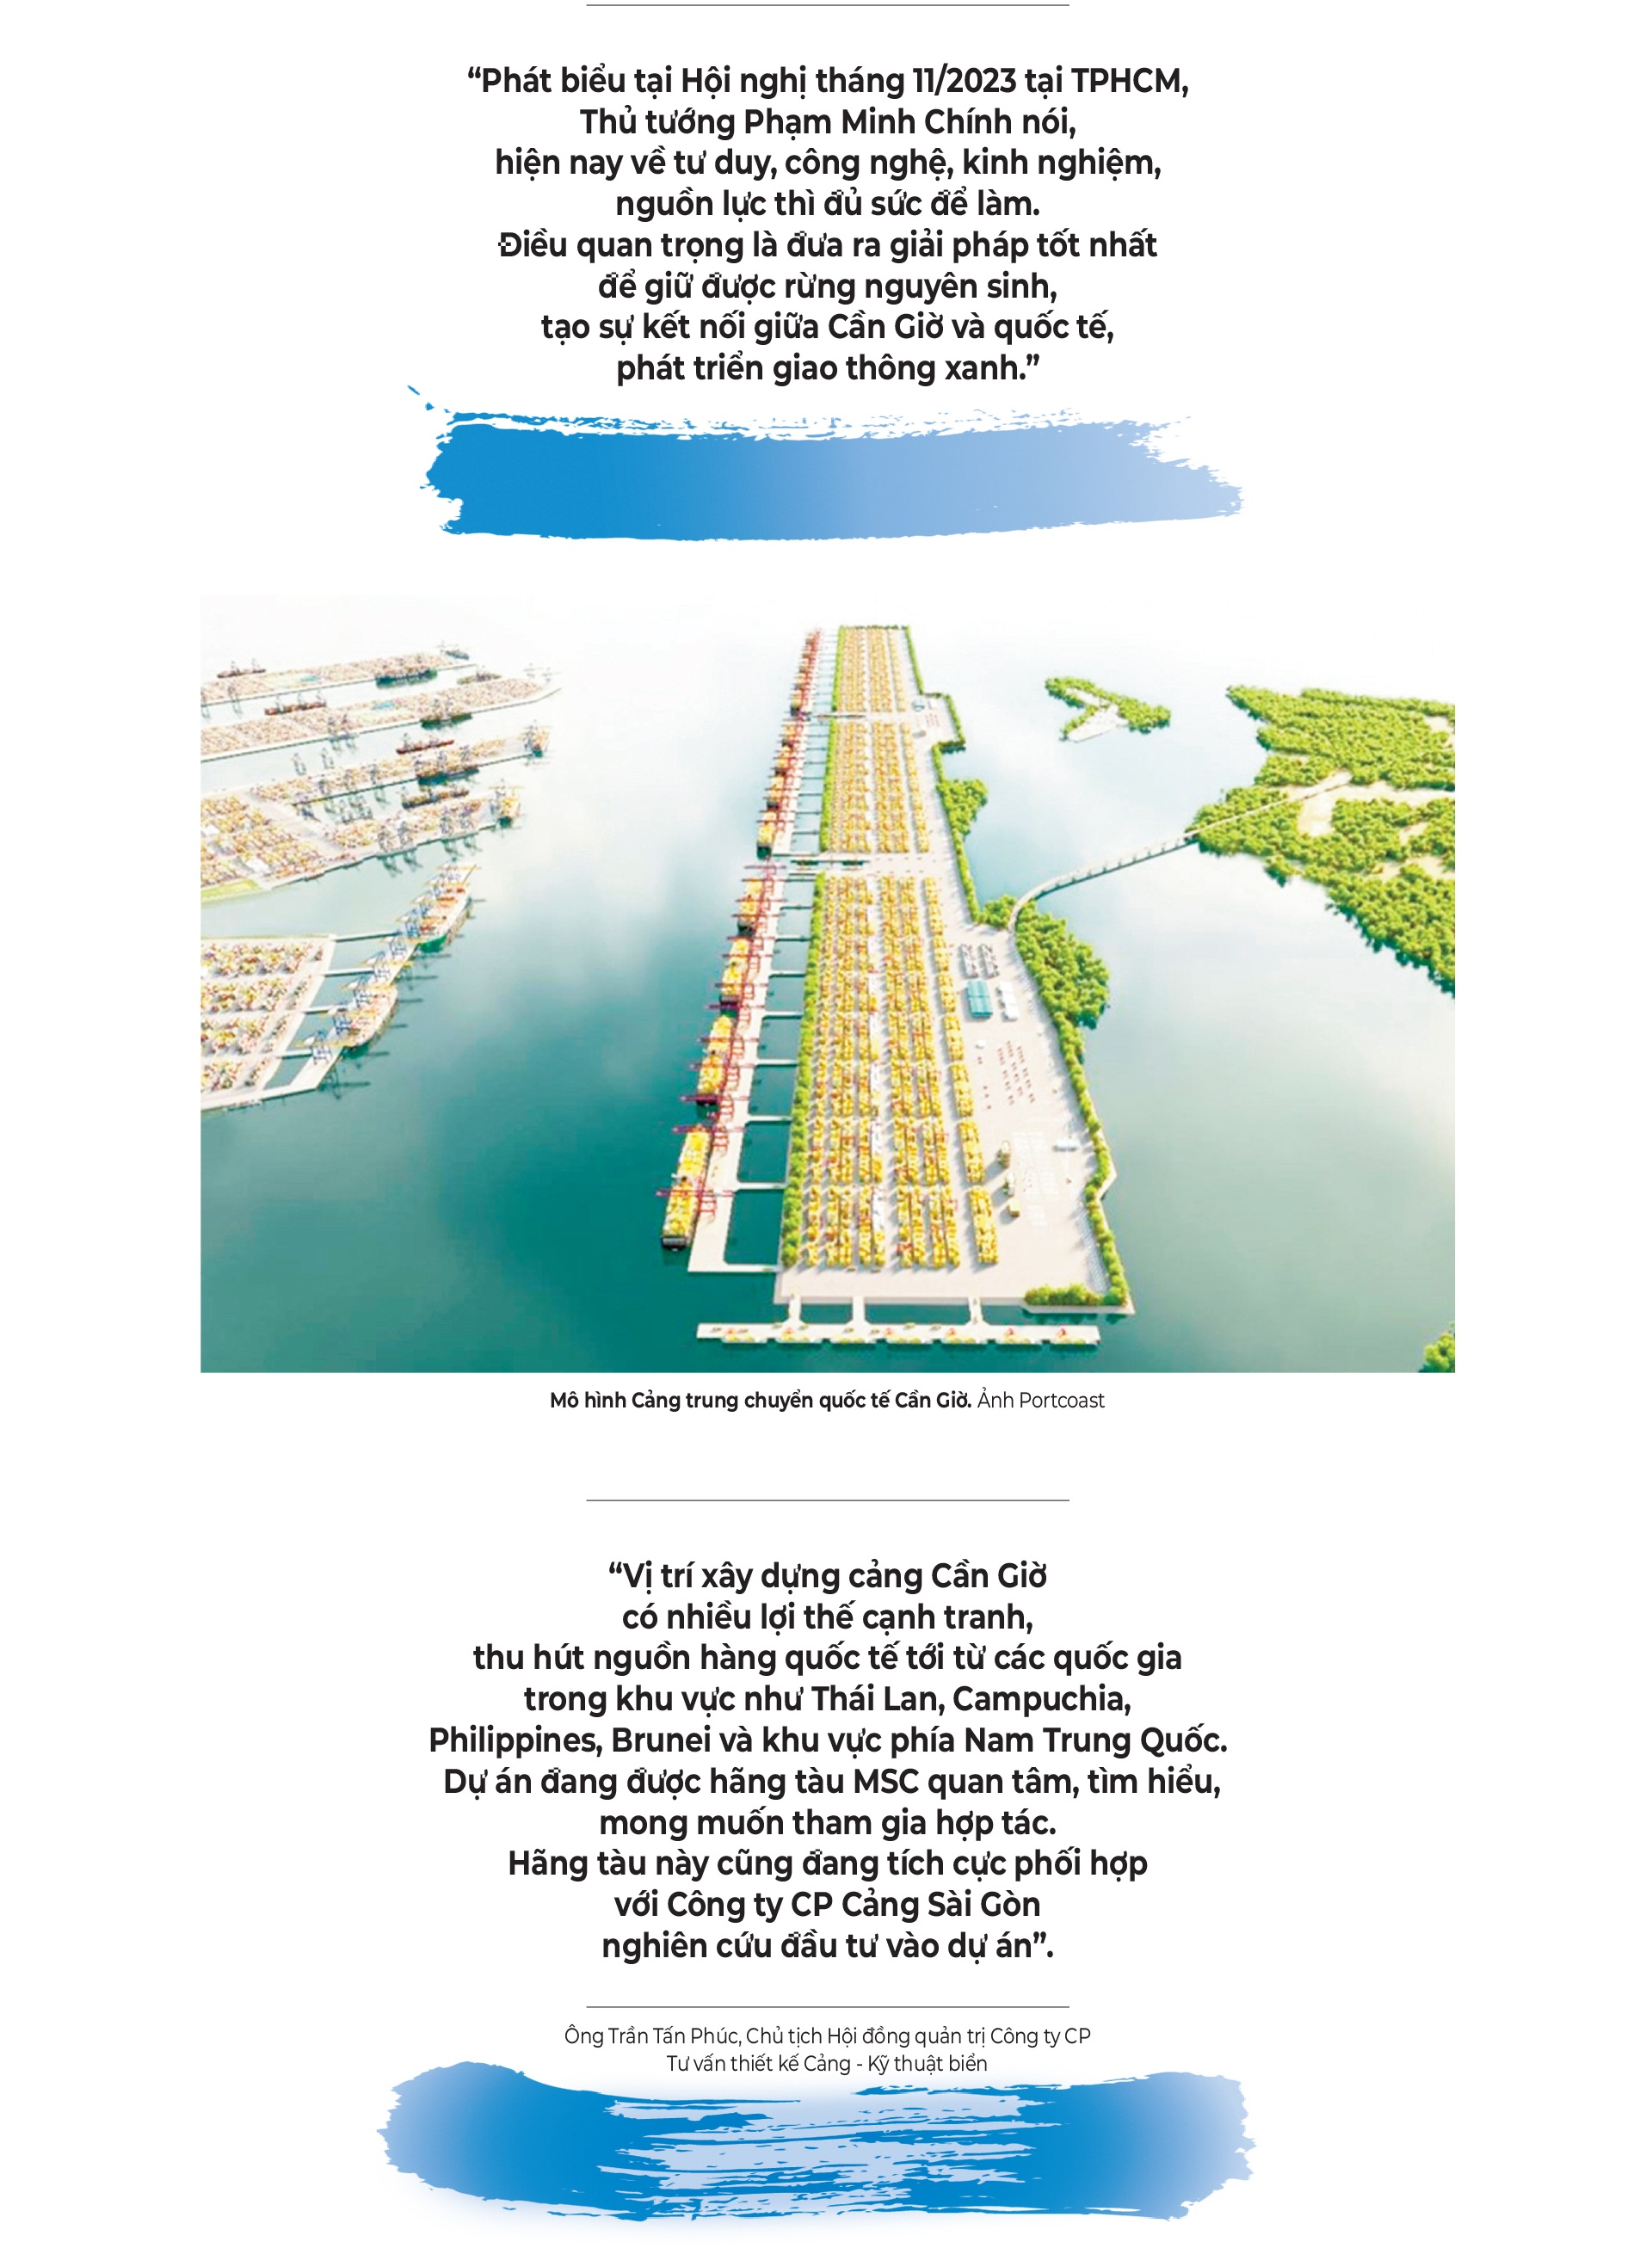 LONGFORM: Cảng biển TPHCM – Vai trò quan trọng thúc đẩy phát triển kinh tế đất nước